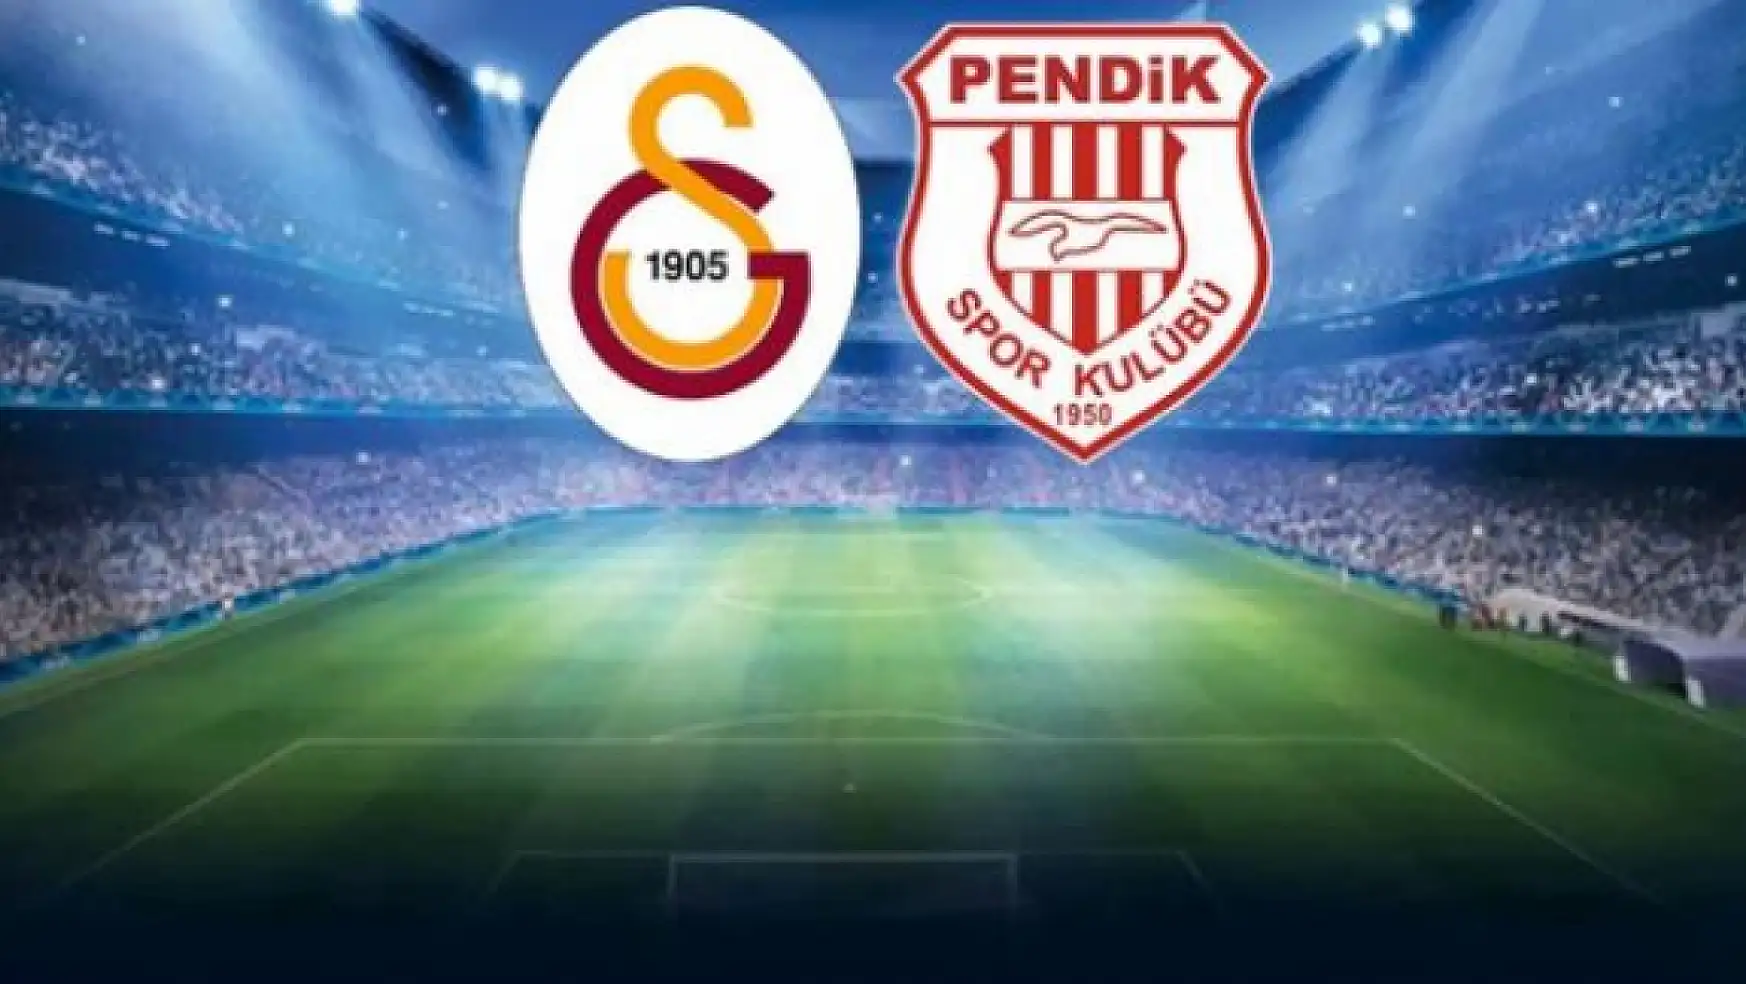 Galatasaray - Pendikspor Maçının İlk 11'leri Belli Oldu